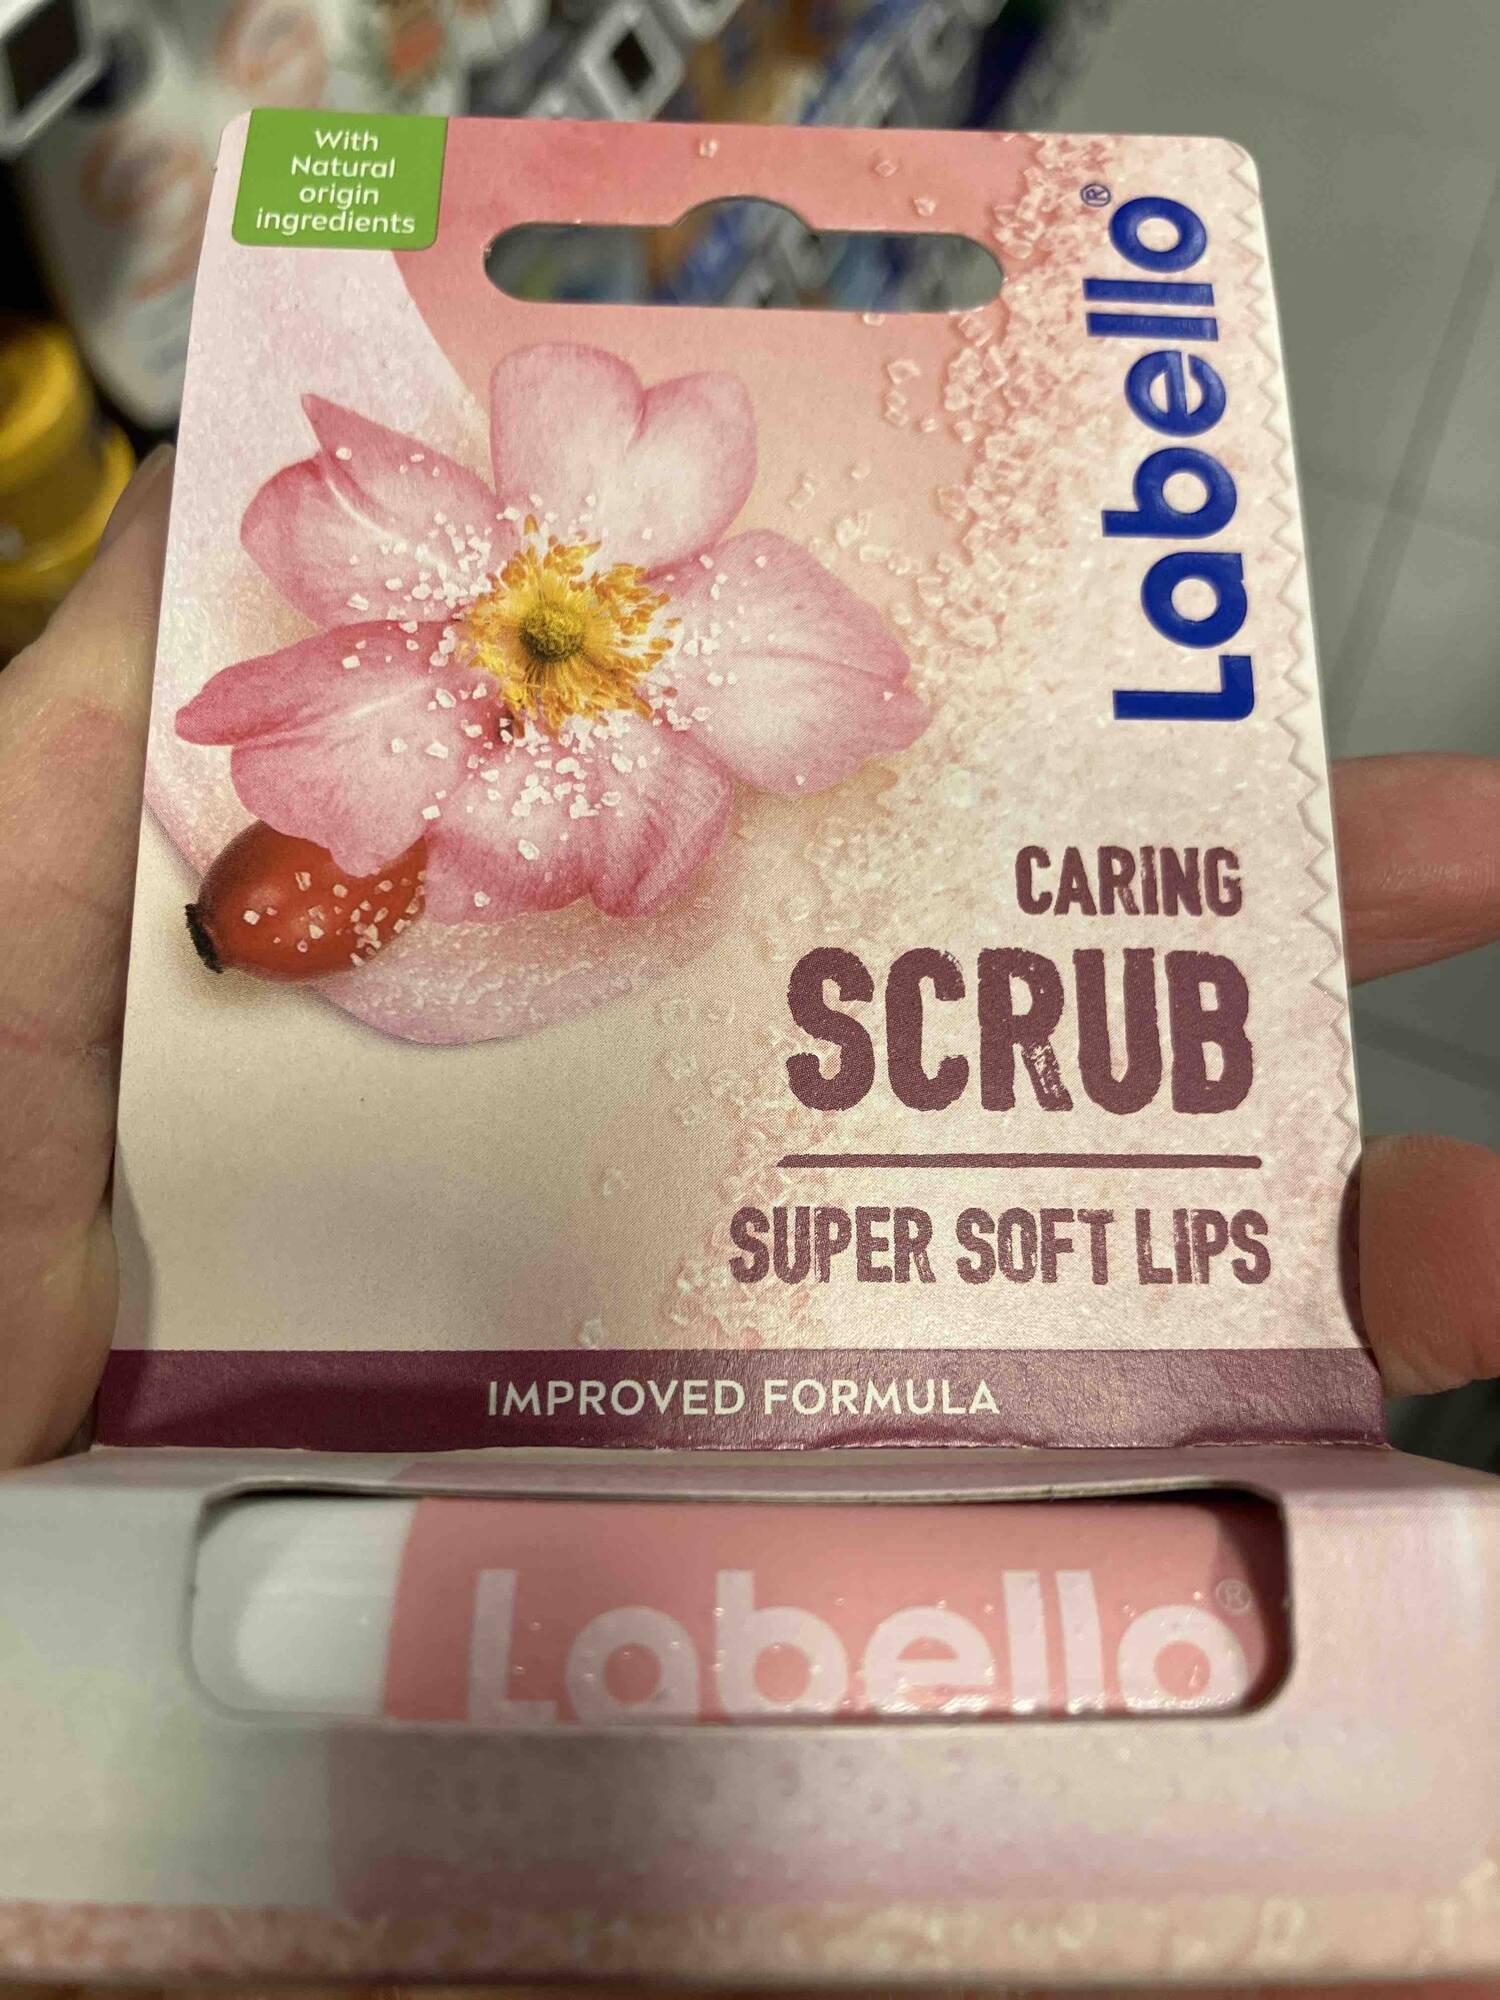 LABELLO - Caring scrub - Super soft lips